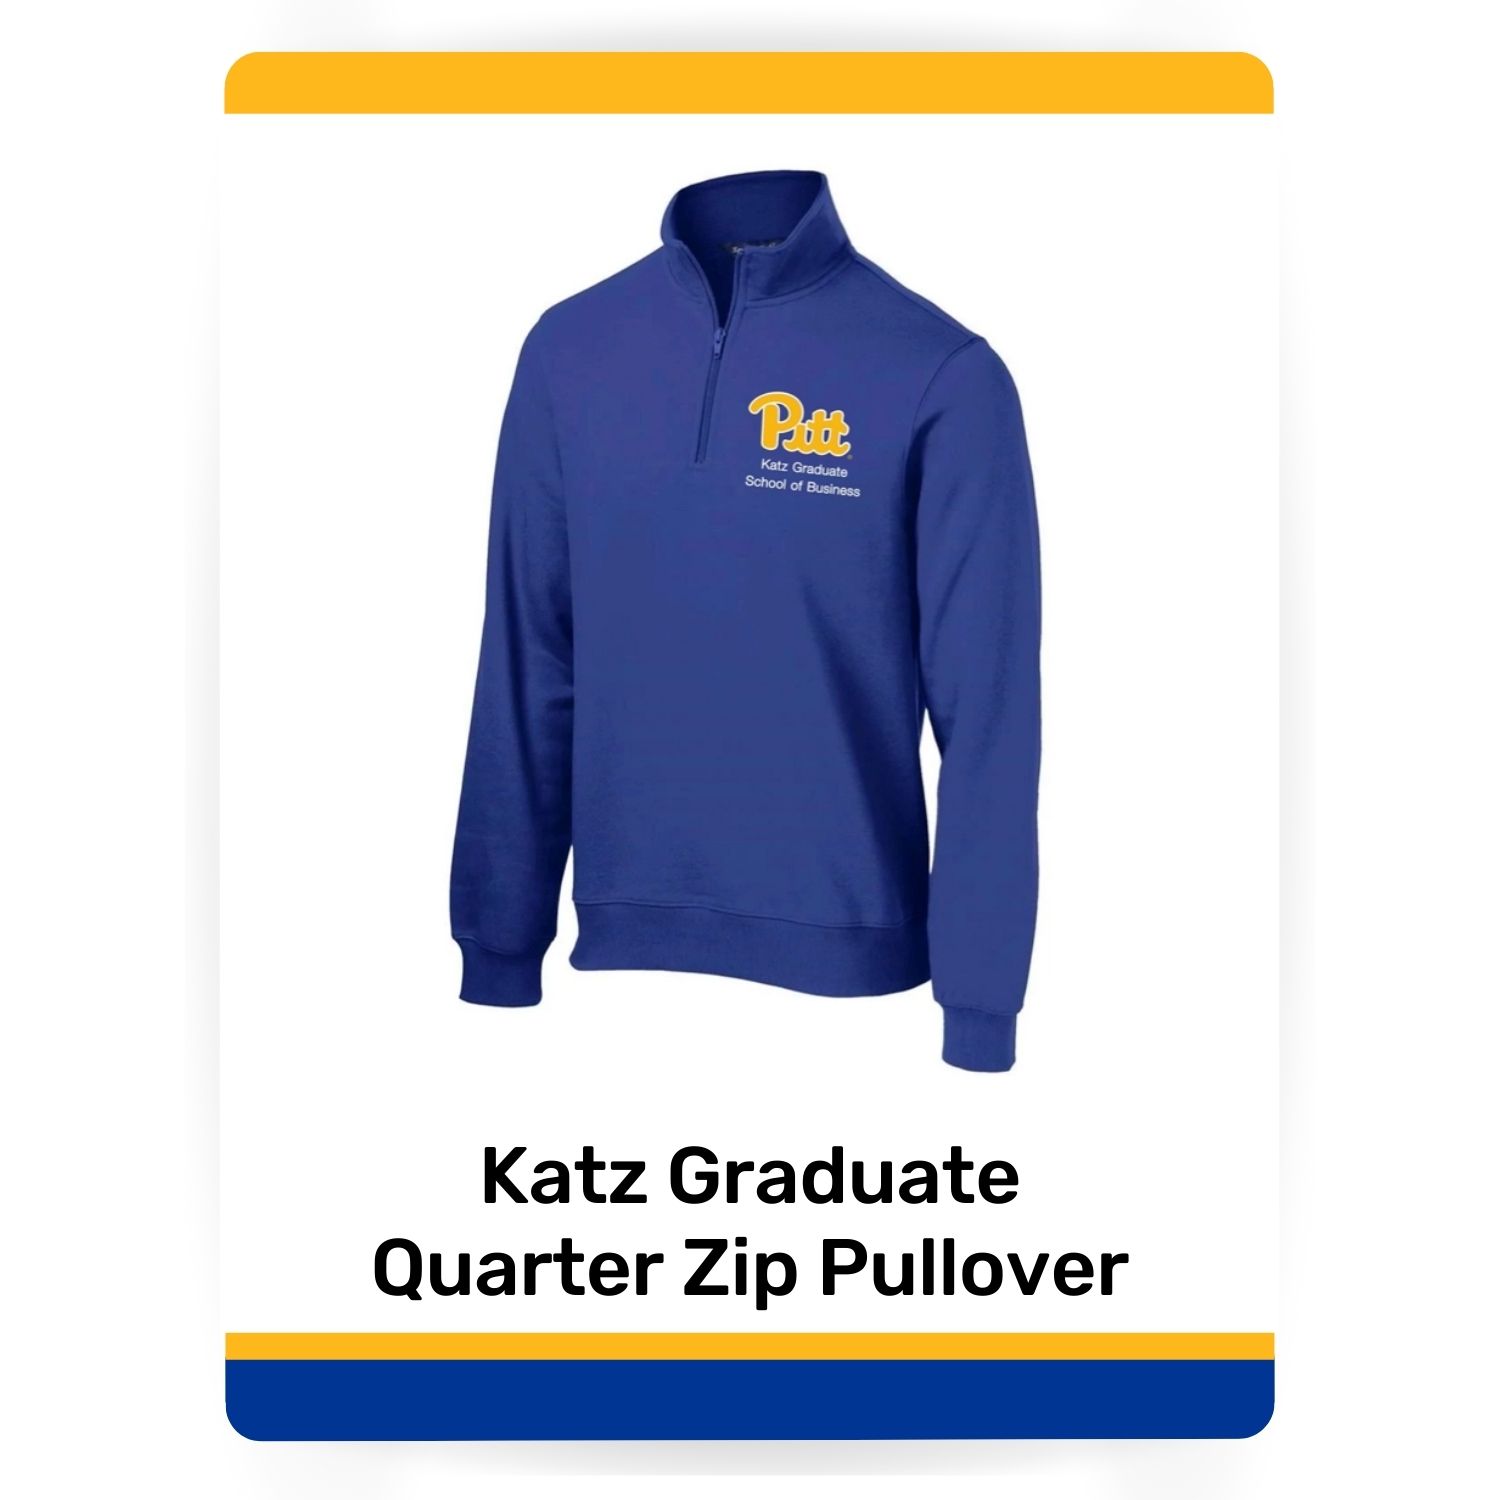 Katz Graduate Quarter Zip Pullover